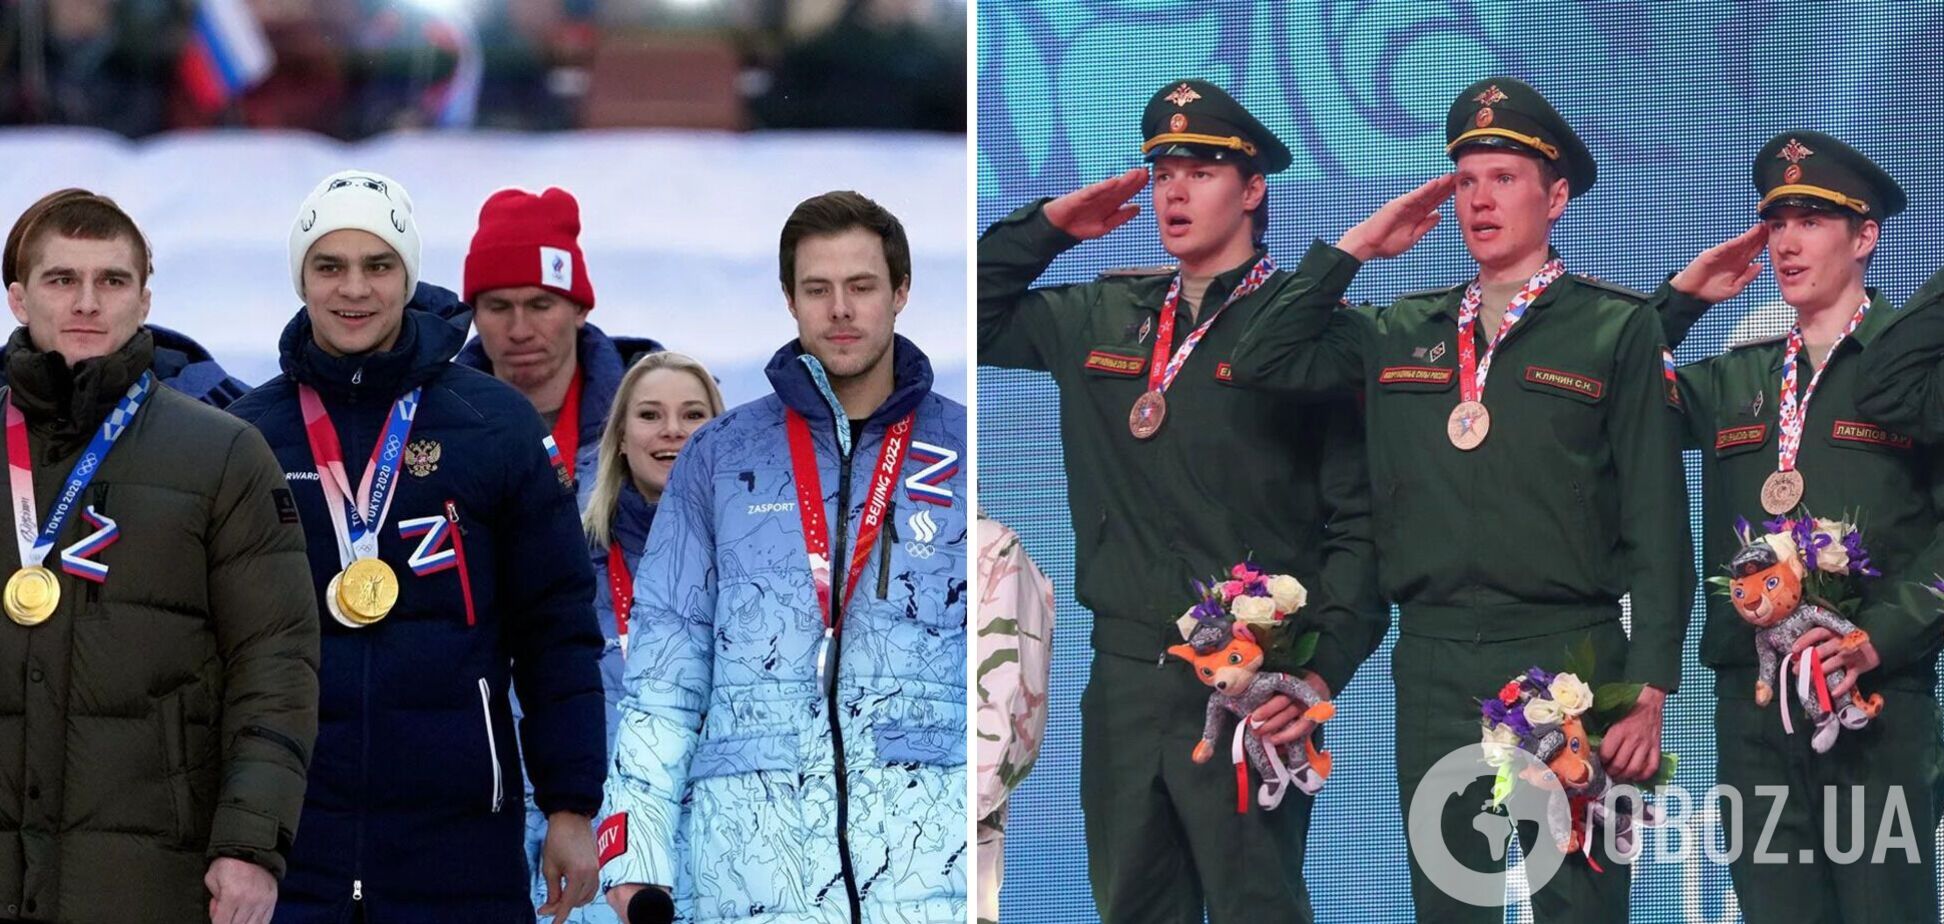 'Незаконно': російським спортсменам заборонили засуджувати війну в Україні